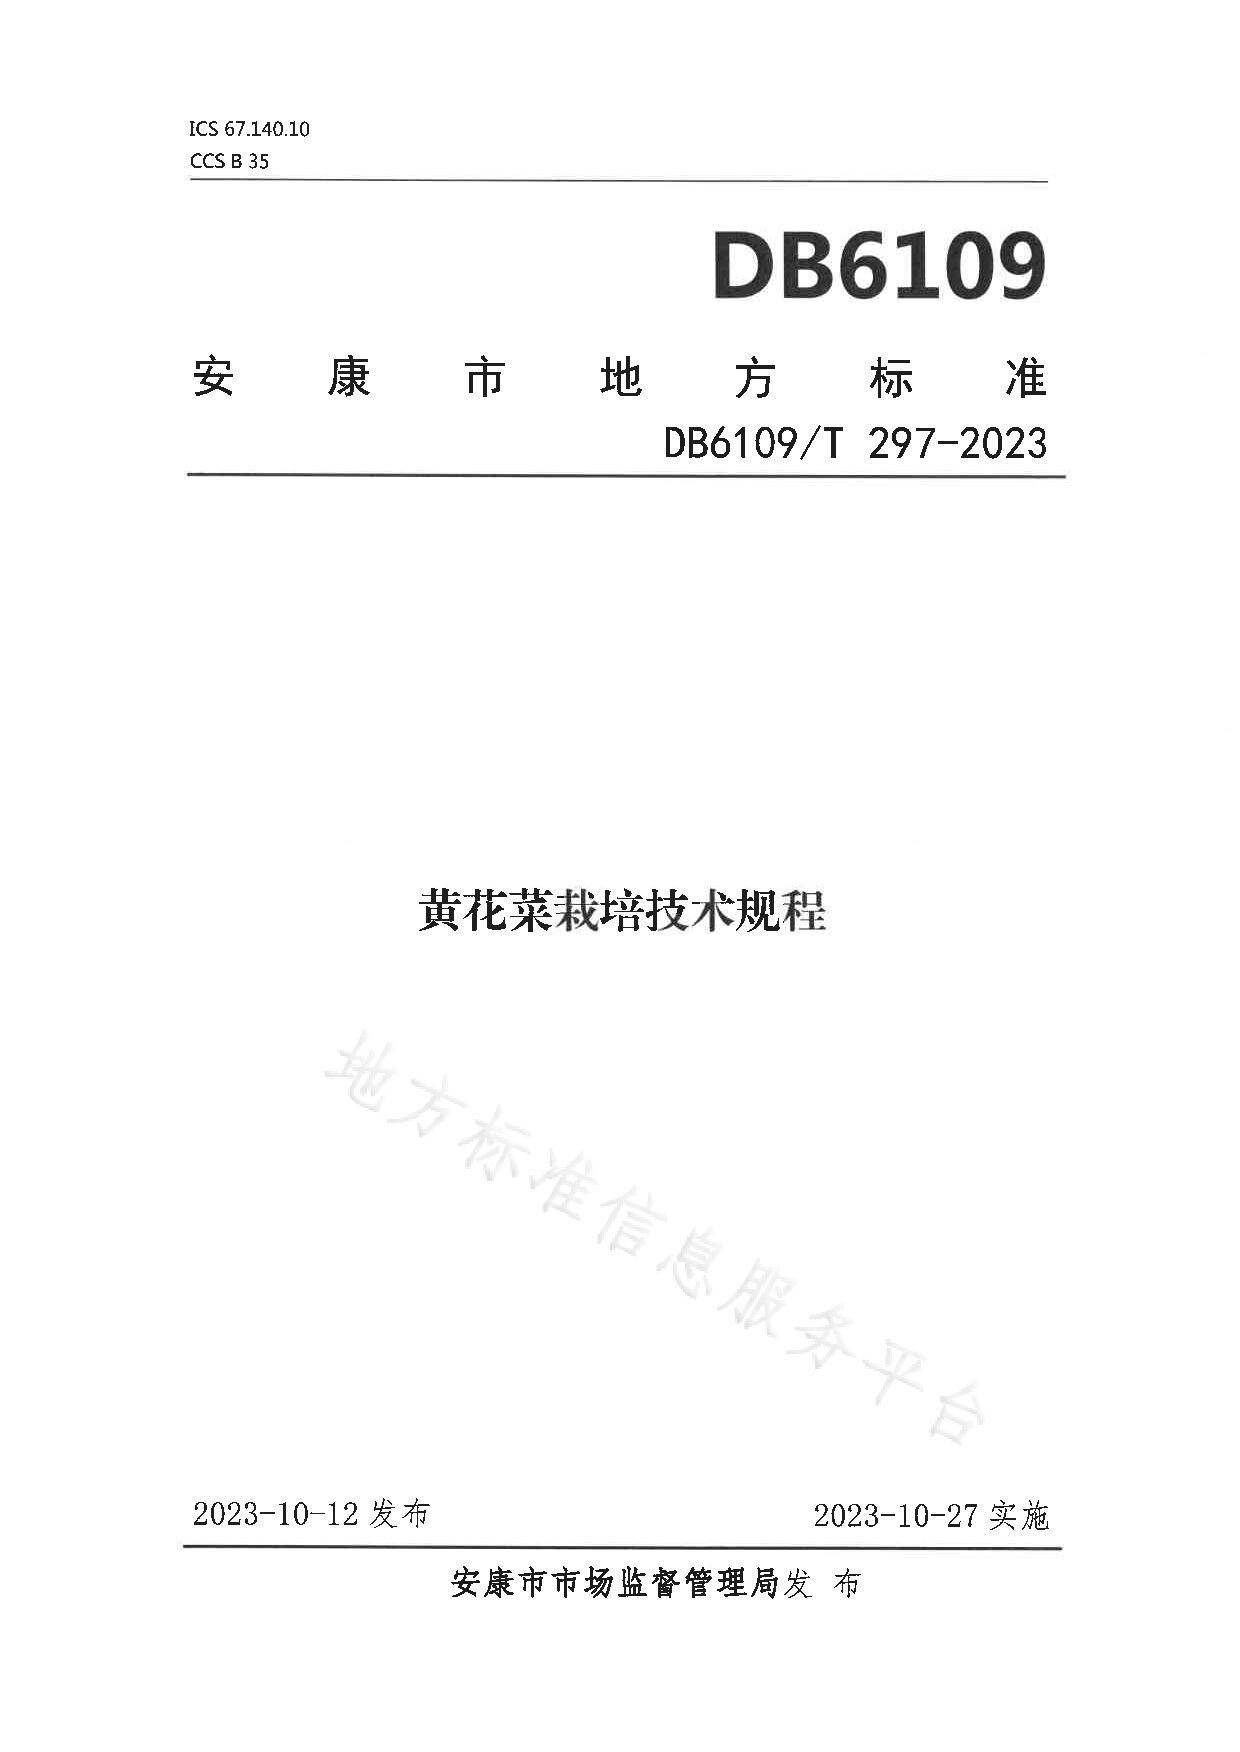 DB6109/T 297-2023封面图